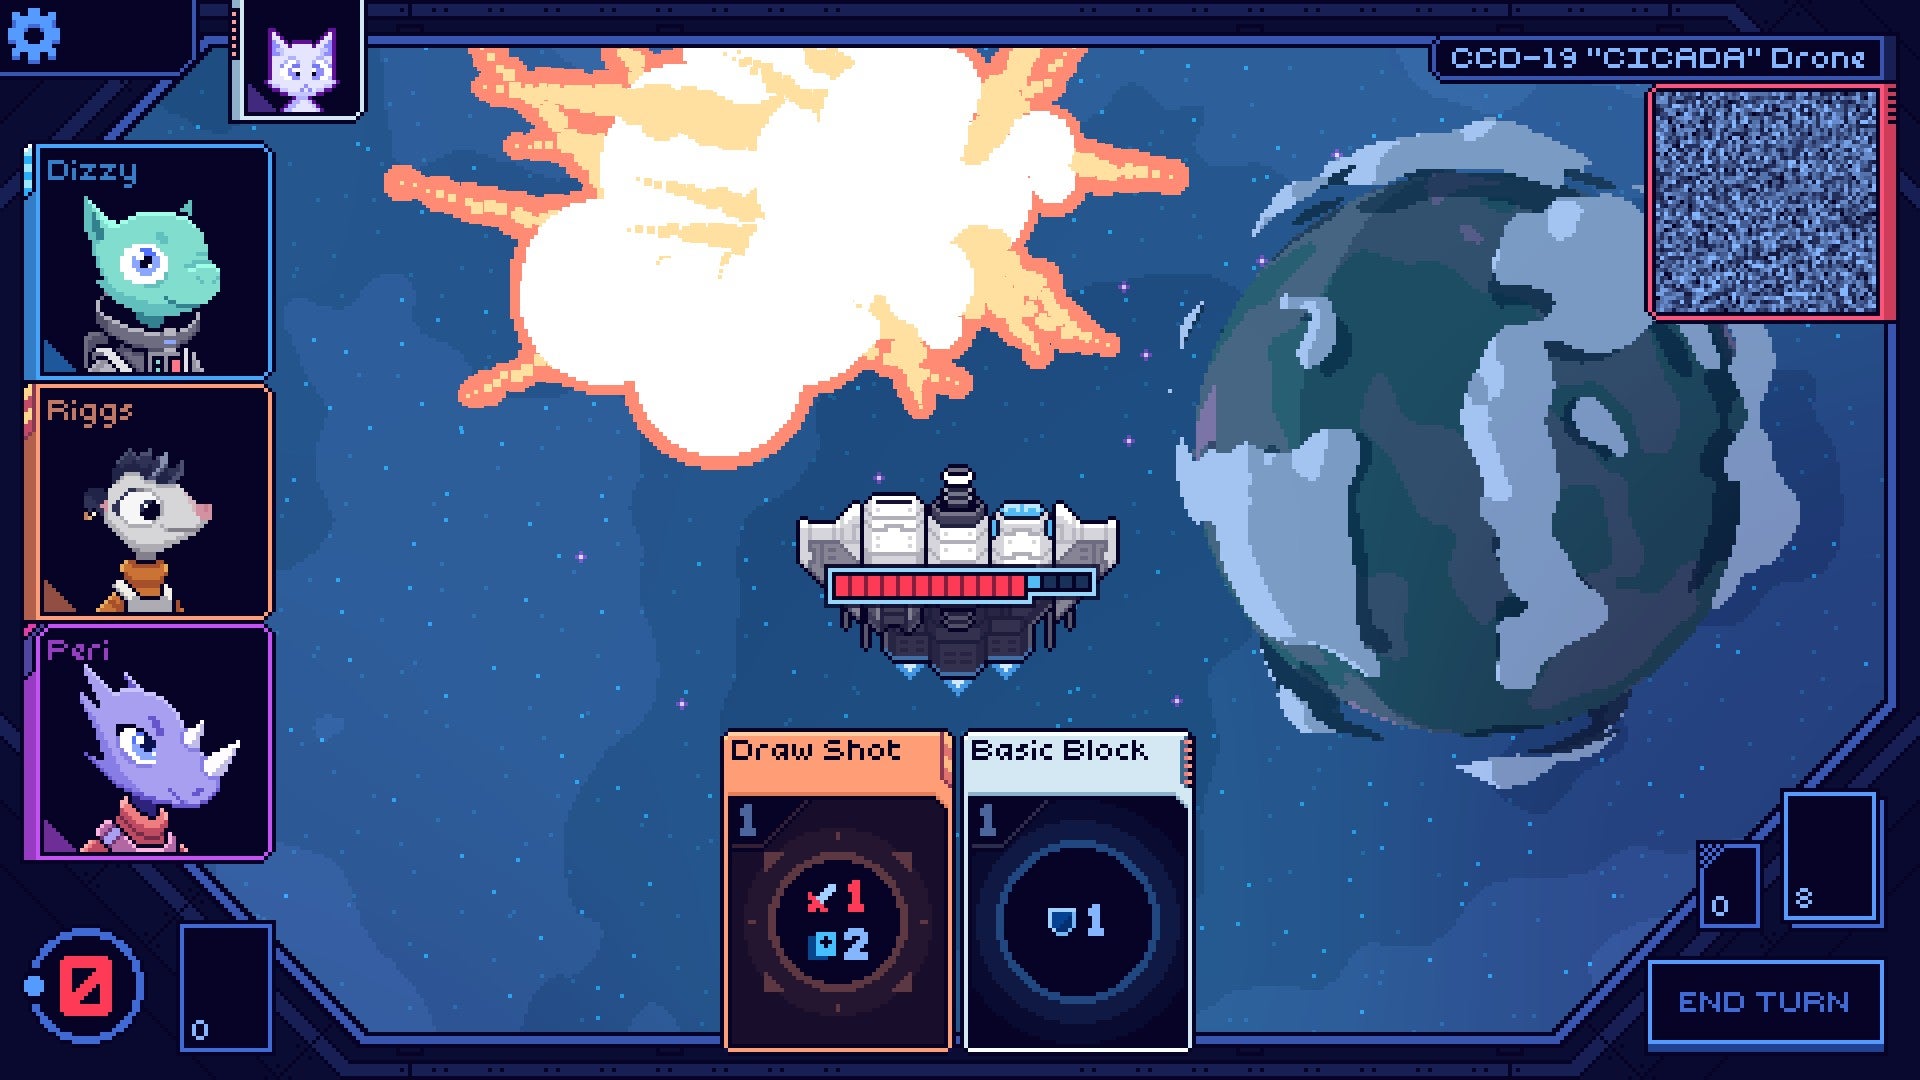 Скриншот из Cobalt Core. Пиксельный космический корабль только что уничтожил еще один космический корабль. Большой пиксельный взрыв. Пиксель-урра!